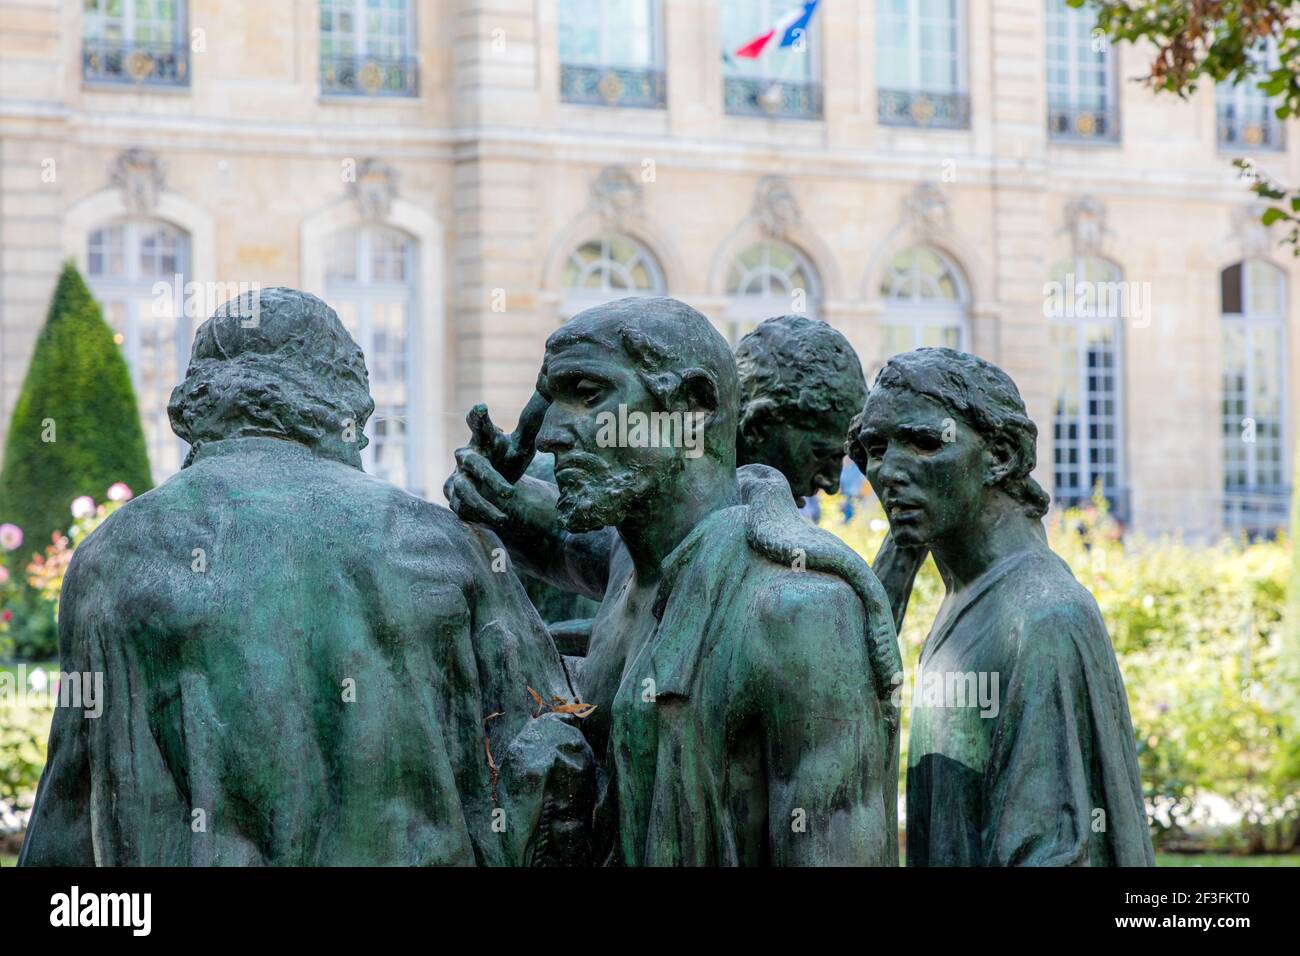 Copie en bronze des Bourgeois de Calais - les Burghers de Calais, sculpture poignante d'Auguste Rodin dans le jardin du Musée Rodin, Paris, Ile-de-France Banque D'Images